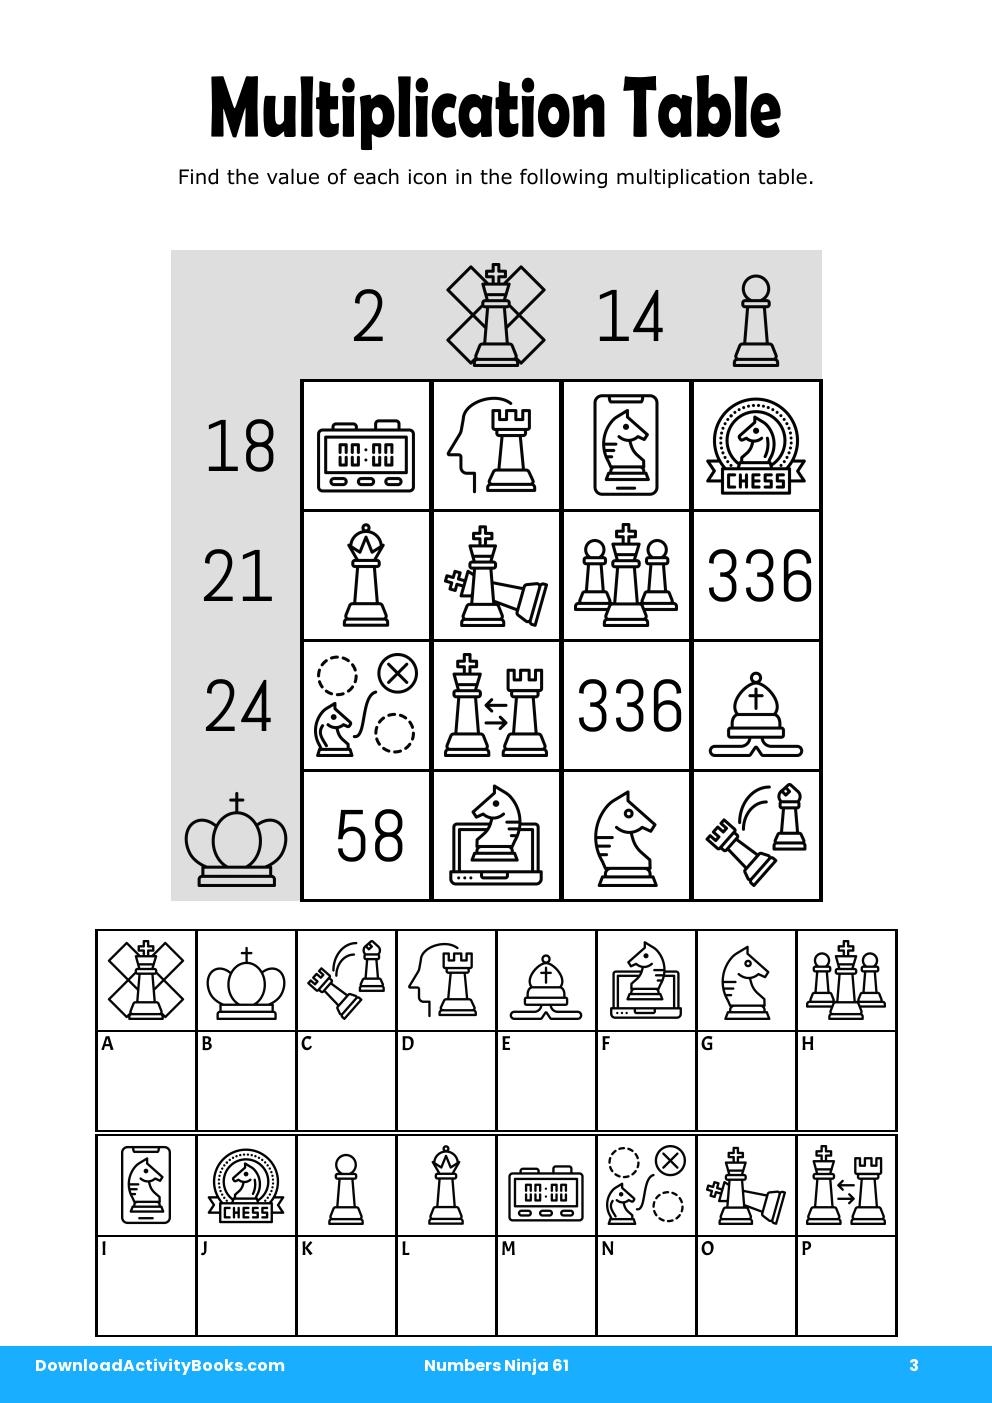 Multiplication Table in Numbers Ninja 61